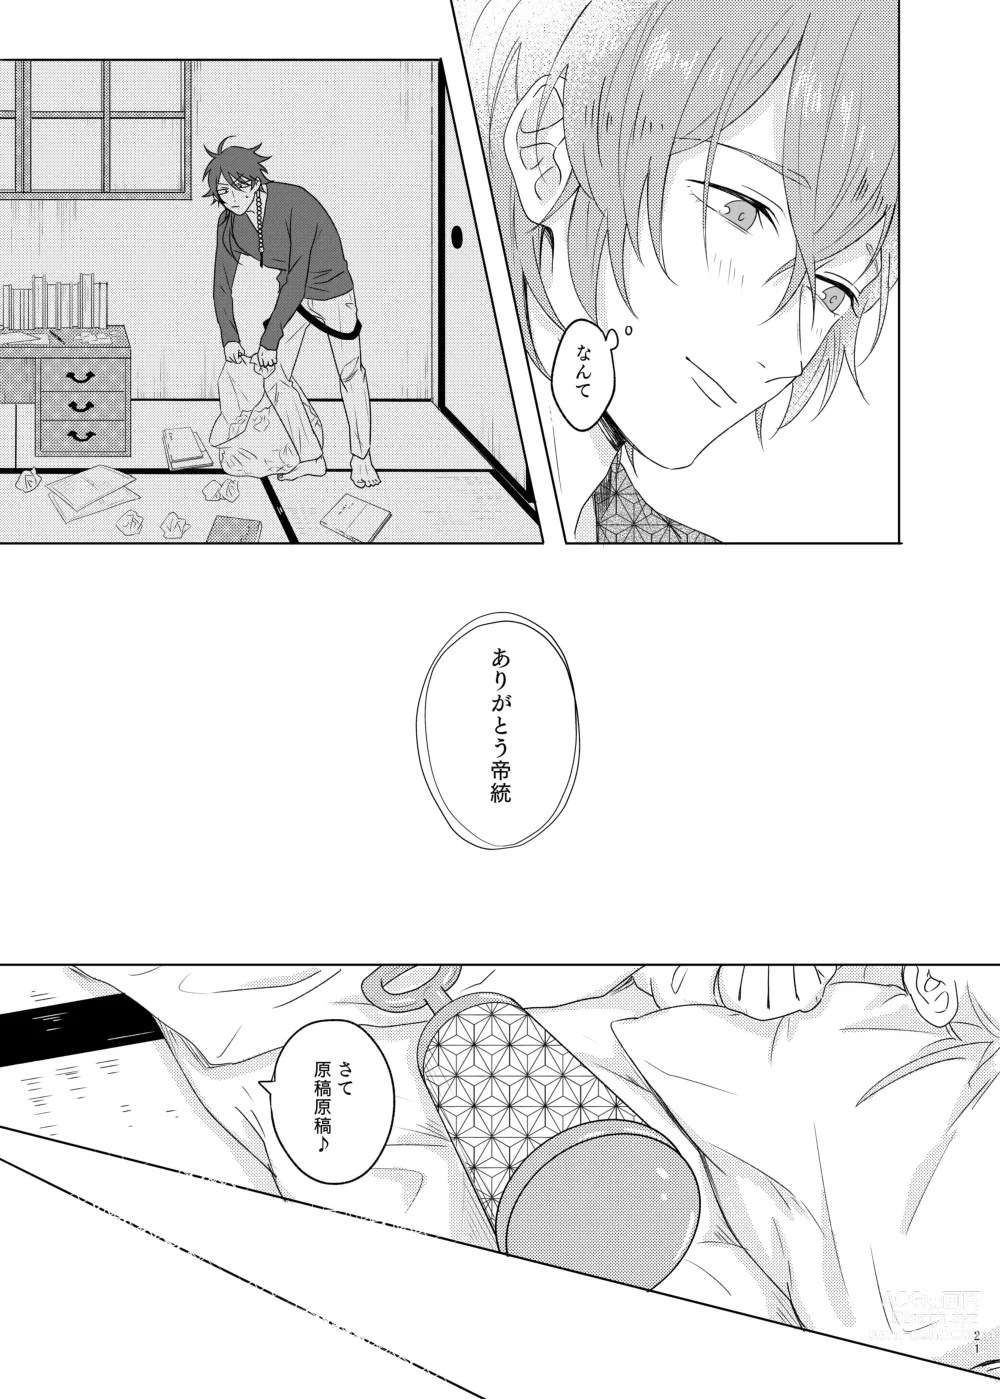 Page 21 of doujinshi Kami sama no ko